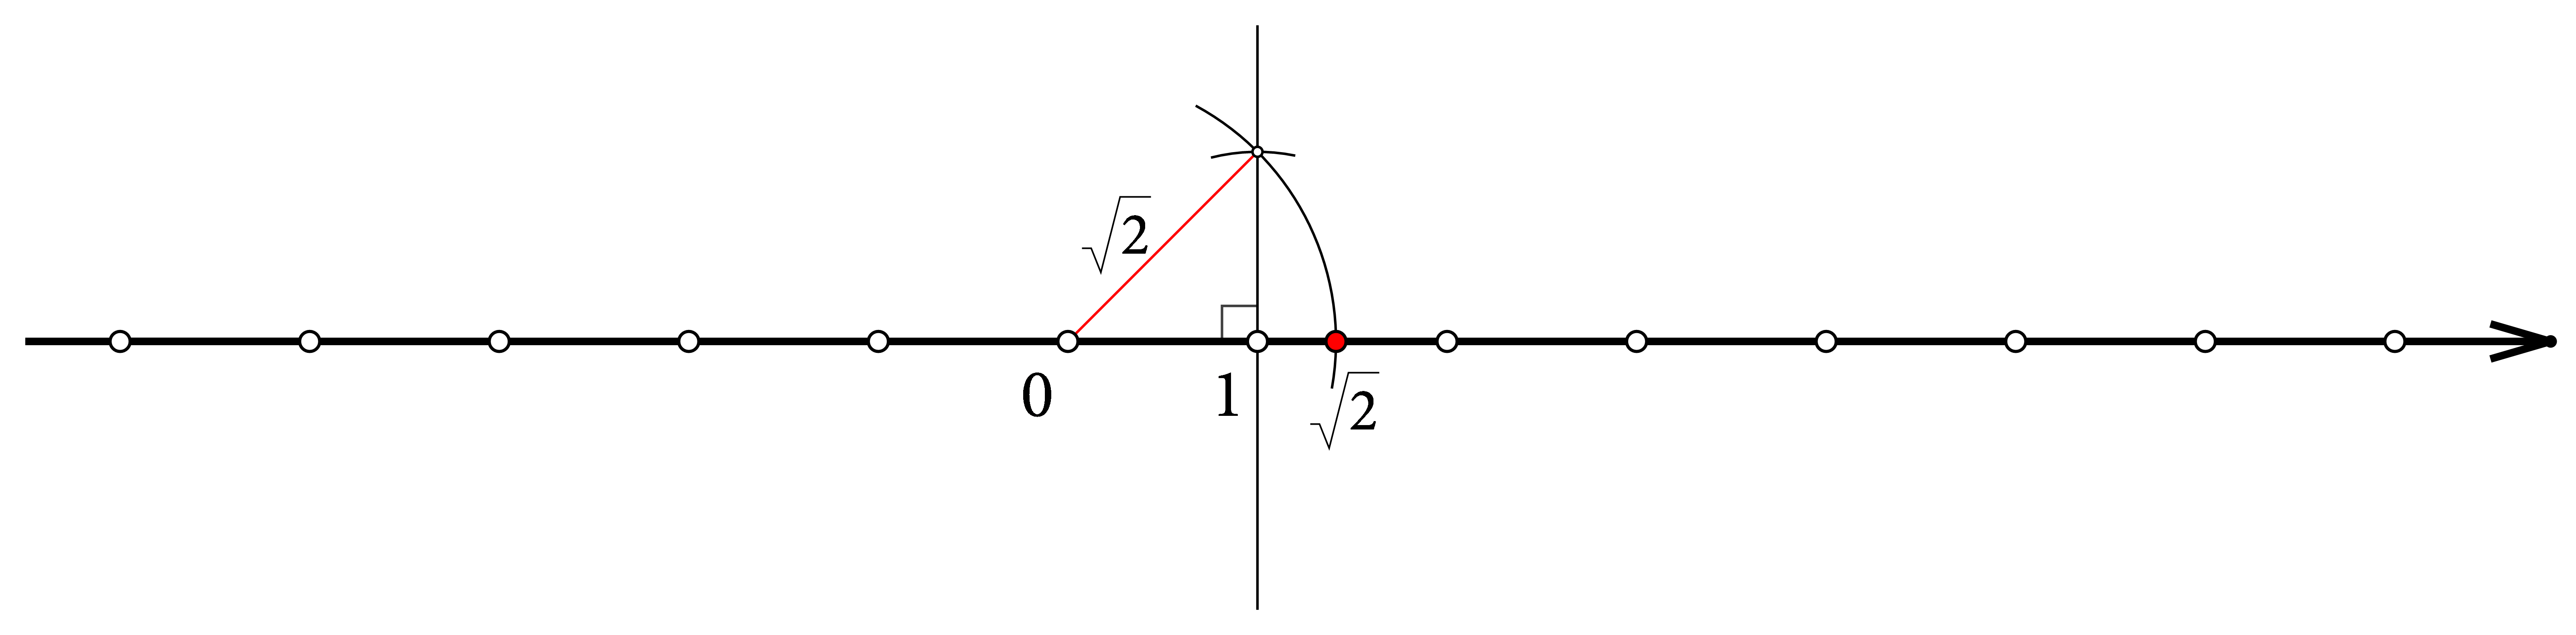 Postupak konstrukcije korijena iz 2 na brojevnom pravcu, konstrukcijom pravokutnog trokuta s hipotenuzom duljine korijen od dva te prenošenjem te dužine na brojevni pravac.